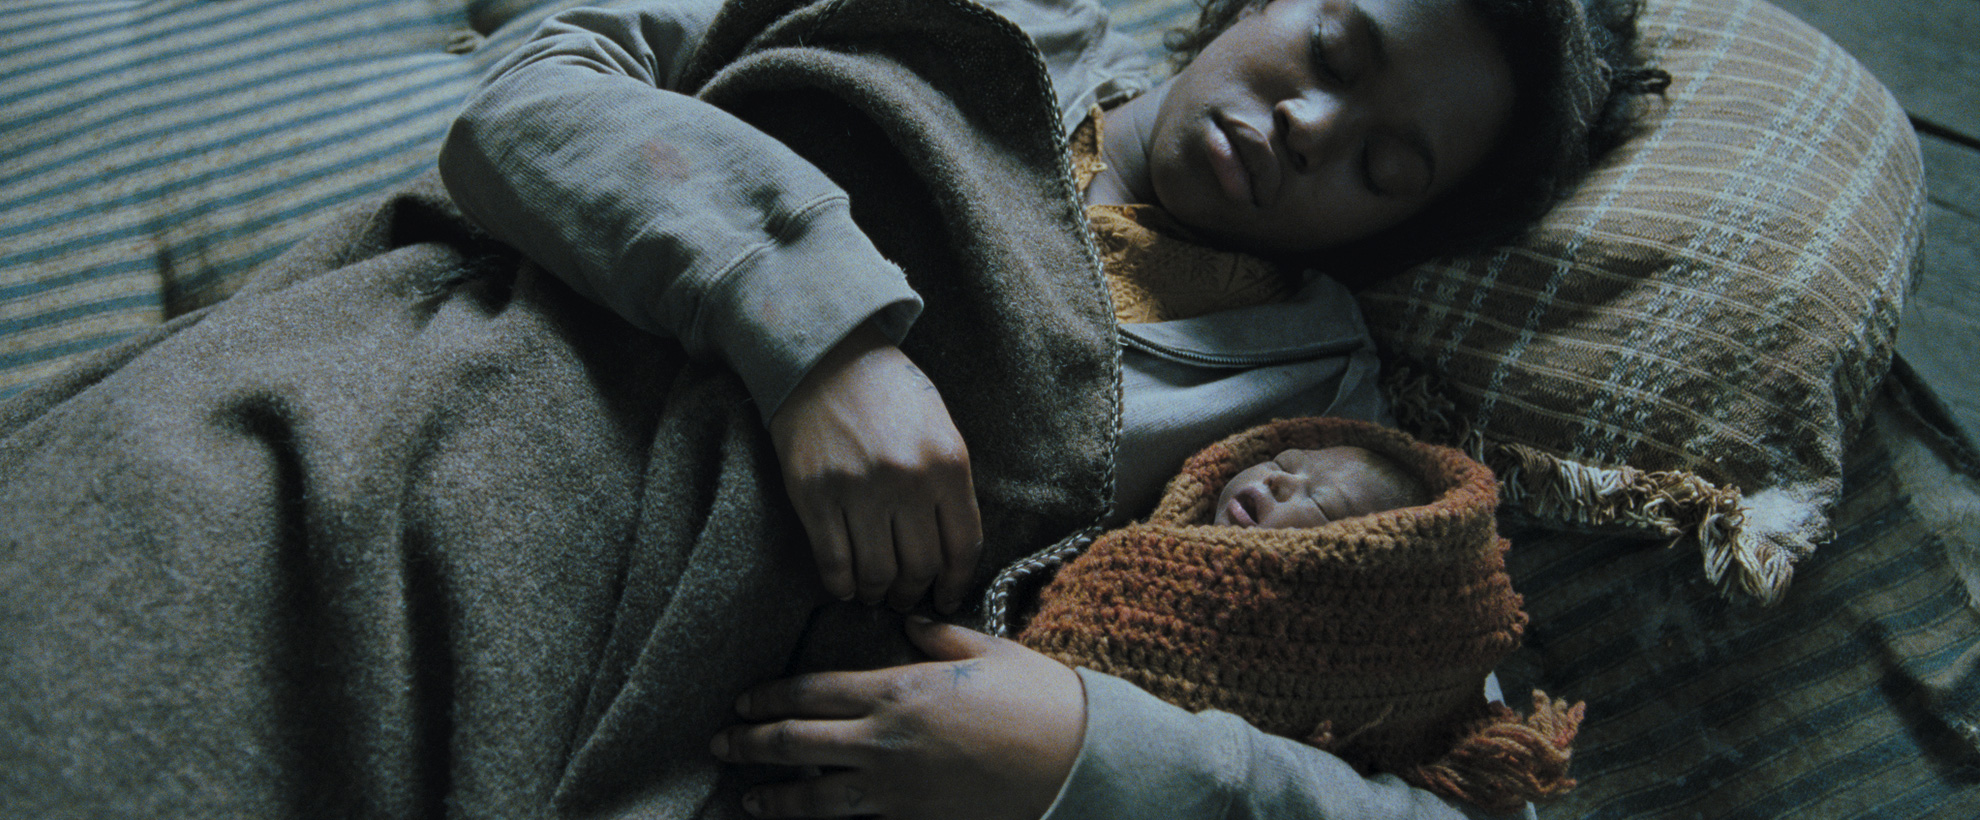 A young black woman lies asleep, under a coat, holding a newborn baby